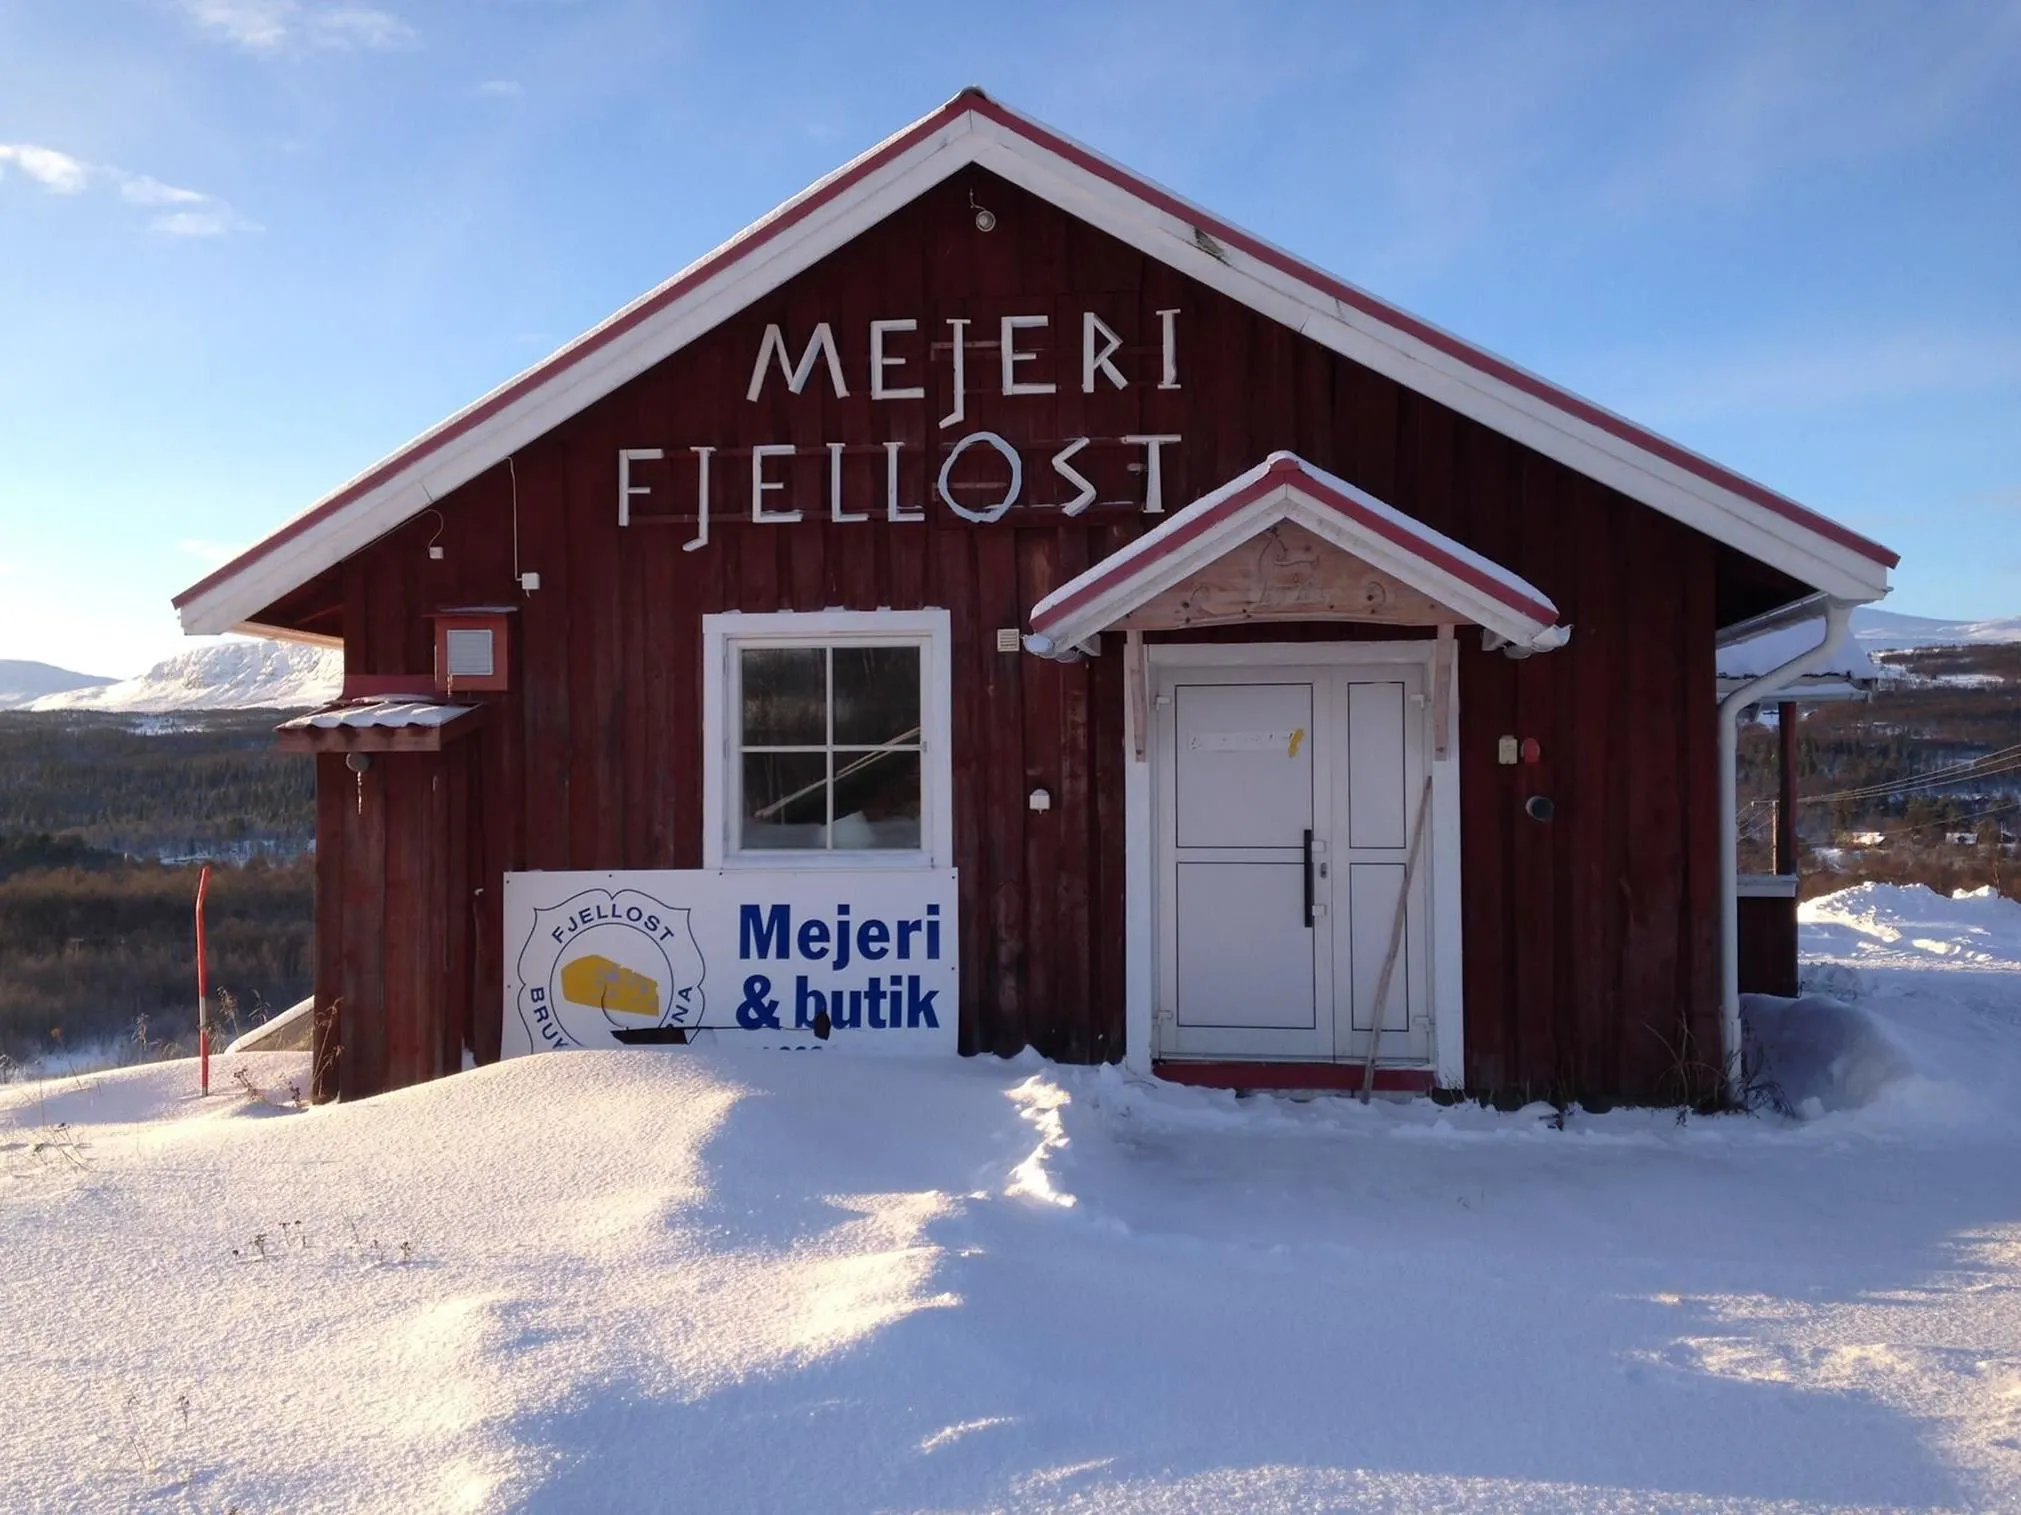 Rött hus med texten "Mejeri Fjellost", på väggen..